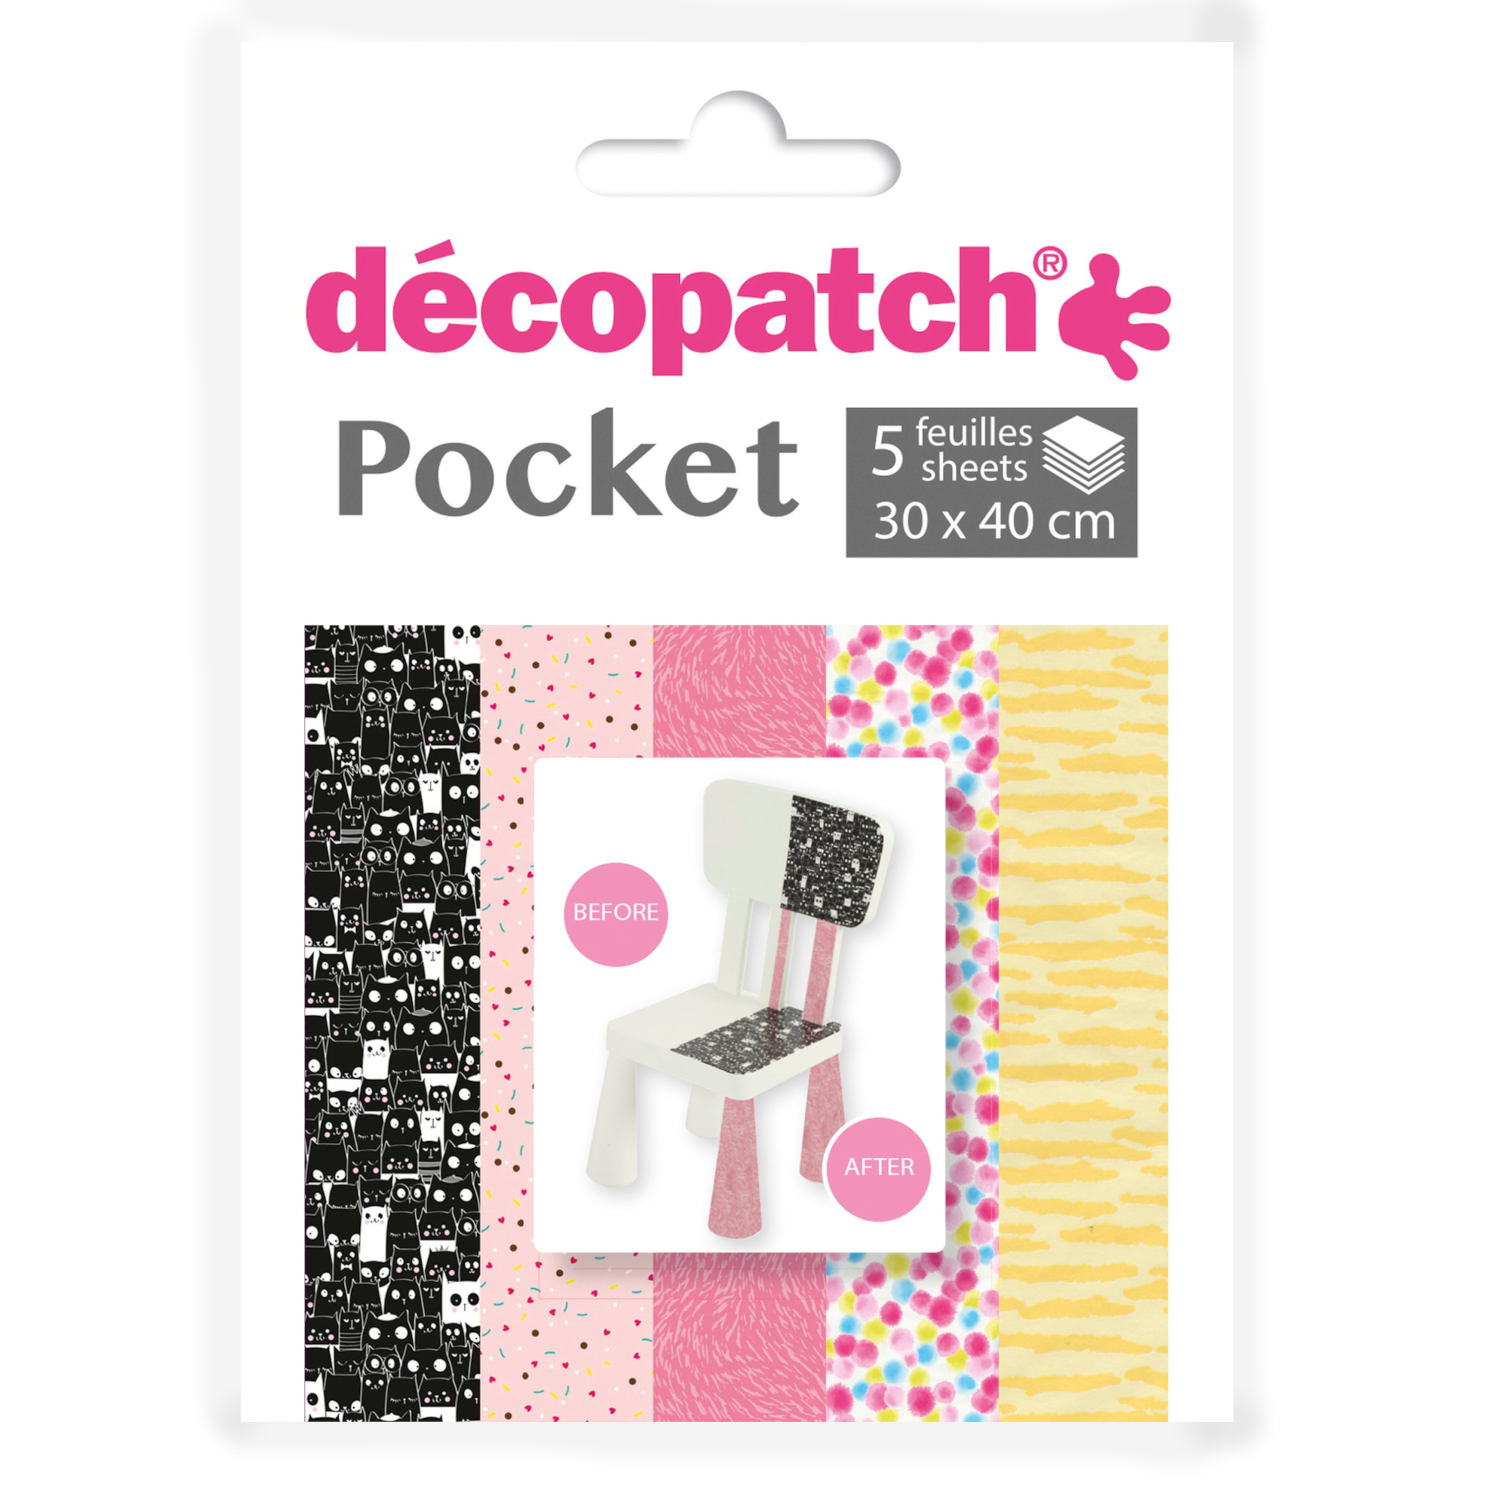 NEU Decoupage- / Decopatch-Papier Pocket-Sortierung, 5 Bogen 30 x 40 cm, Motive: 772, 681, 667, 689, 838